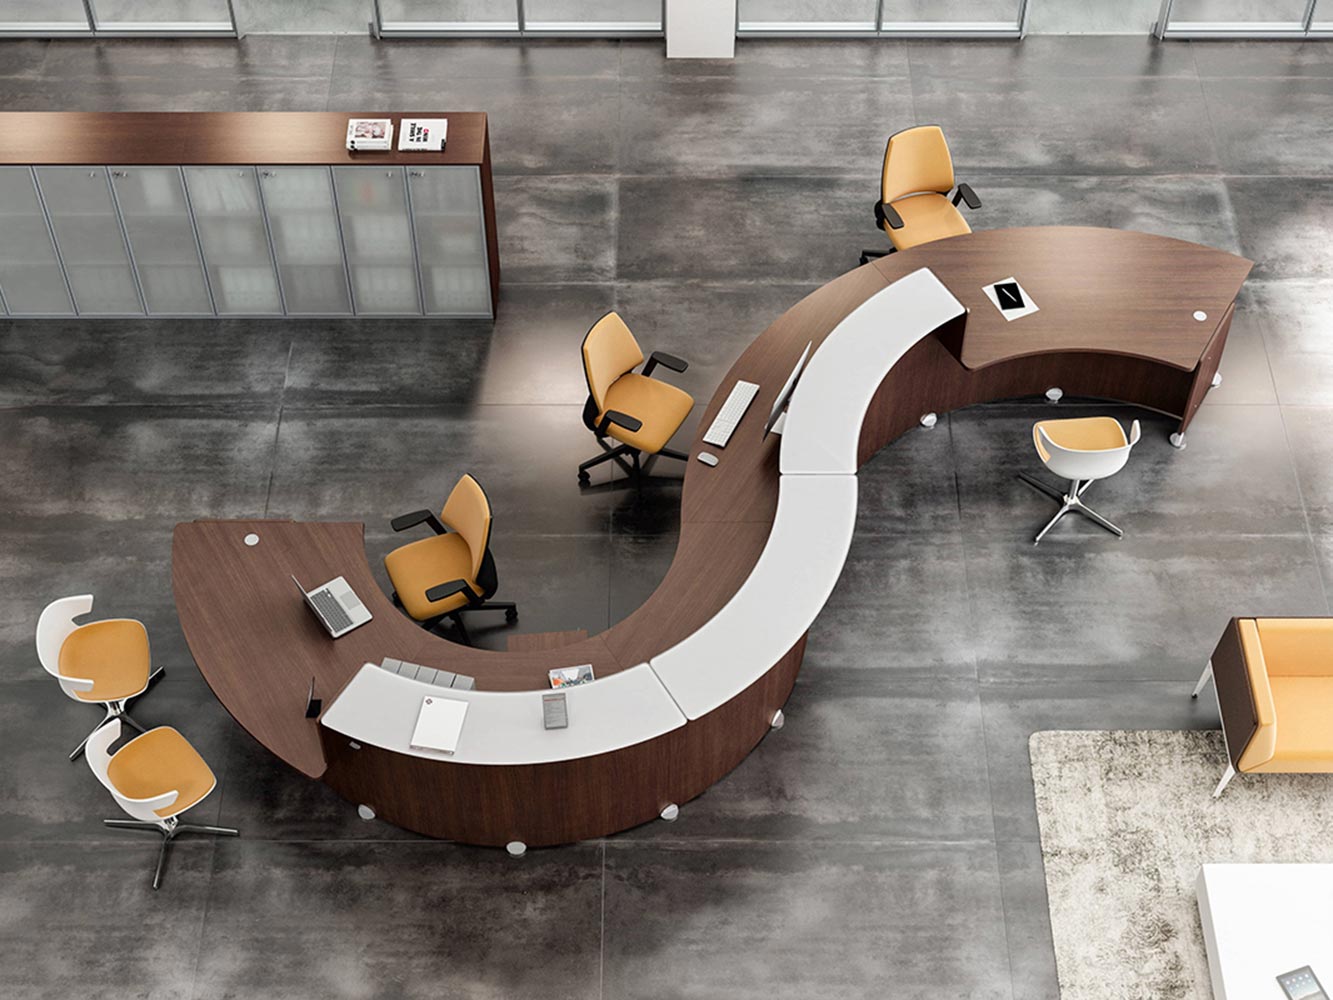 Banque d'accueil marron, choisir la couleur de son mobilier professionnel par Global Concept